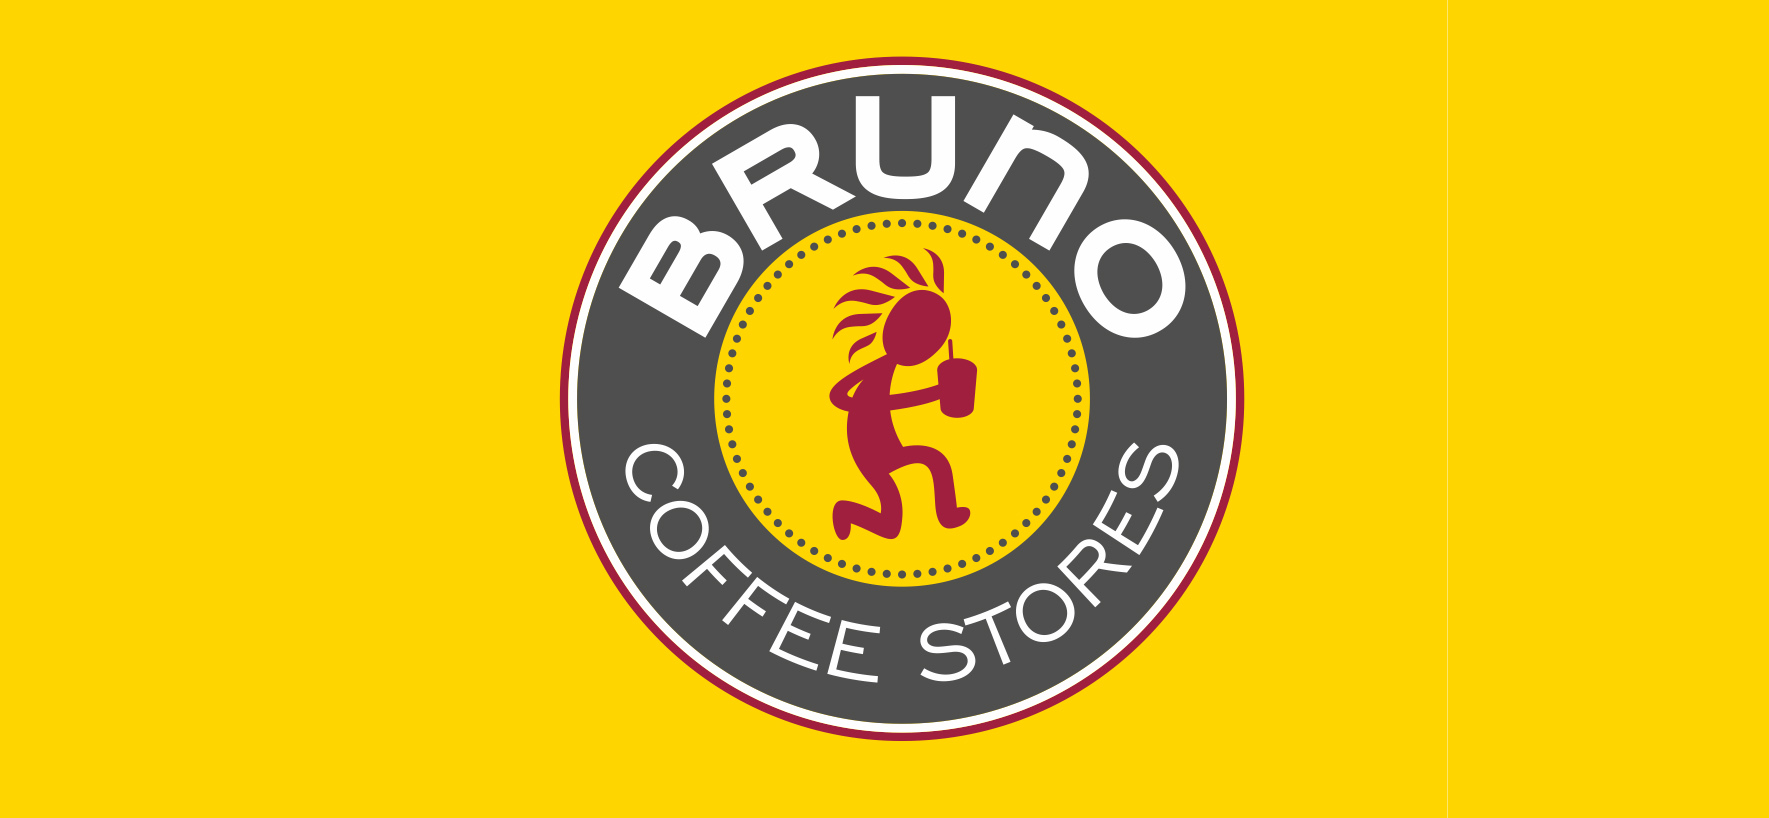 Bruno coffee – Κοντά σας από την Καθαρά Δευτέρα στον Αλμυρό